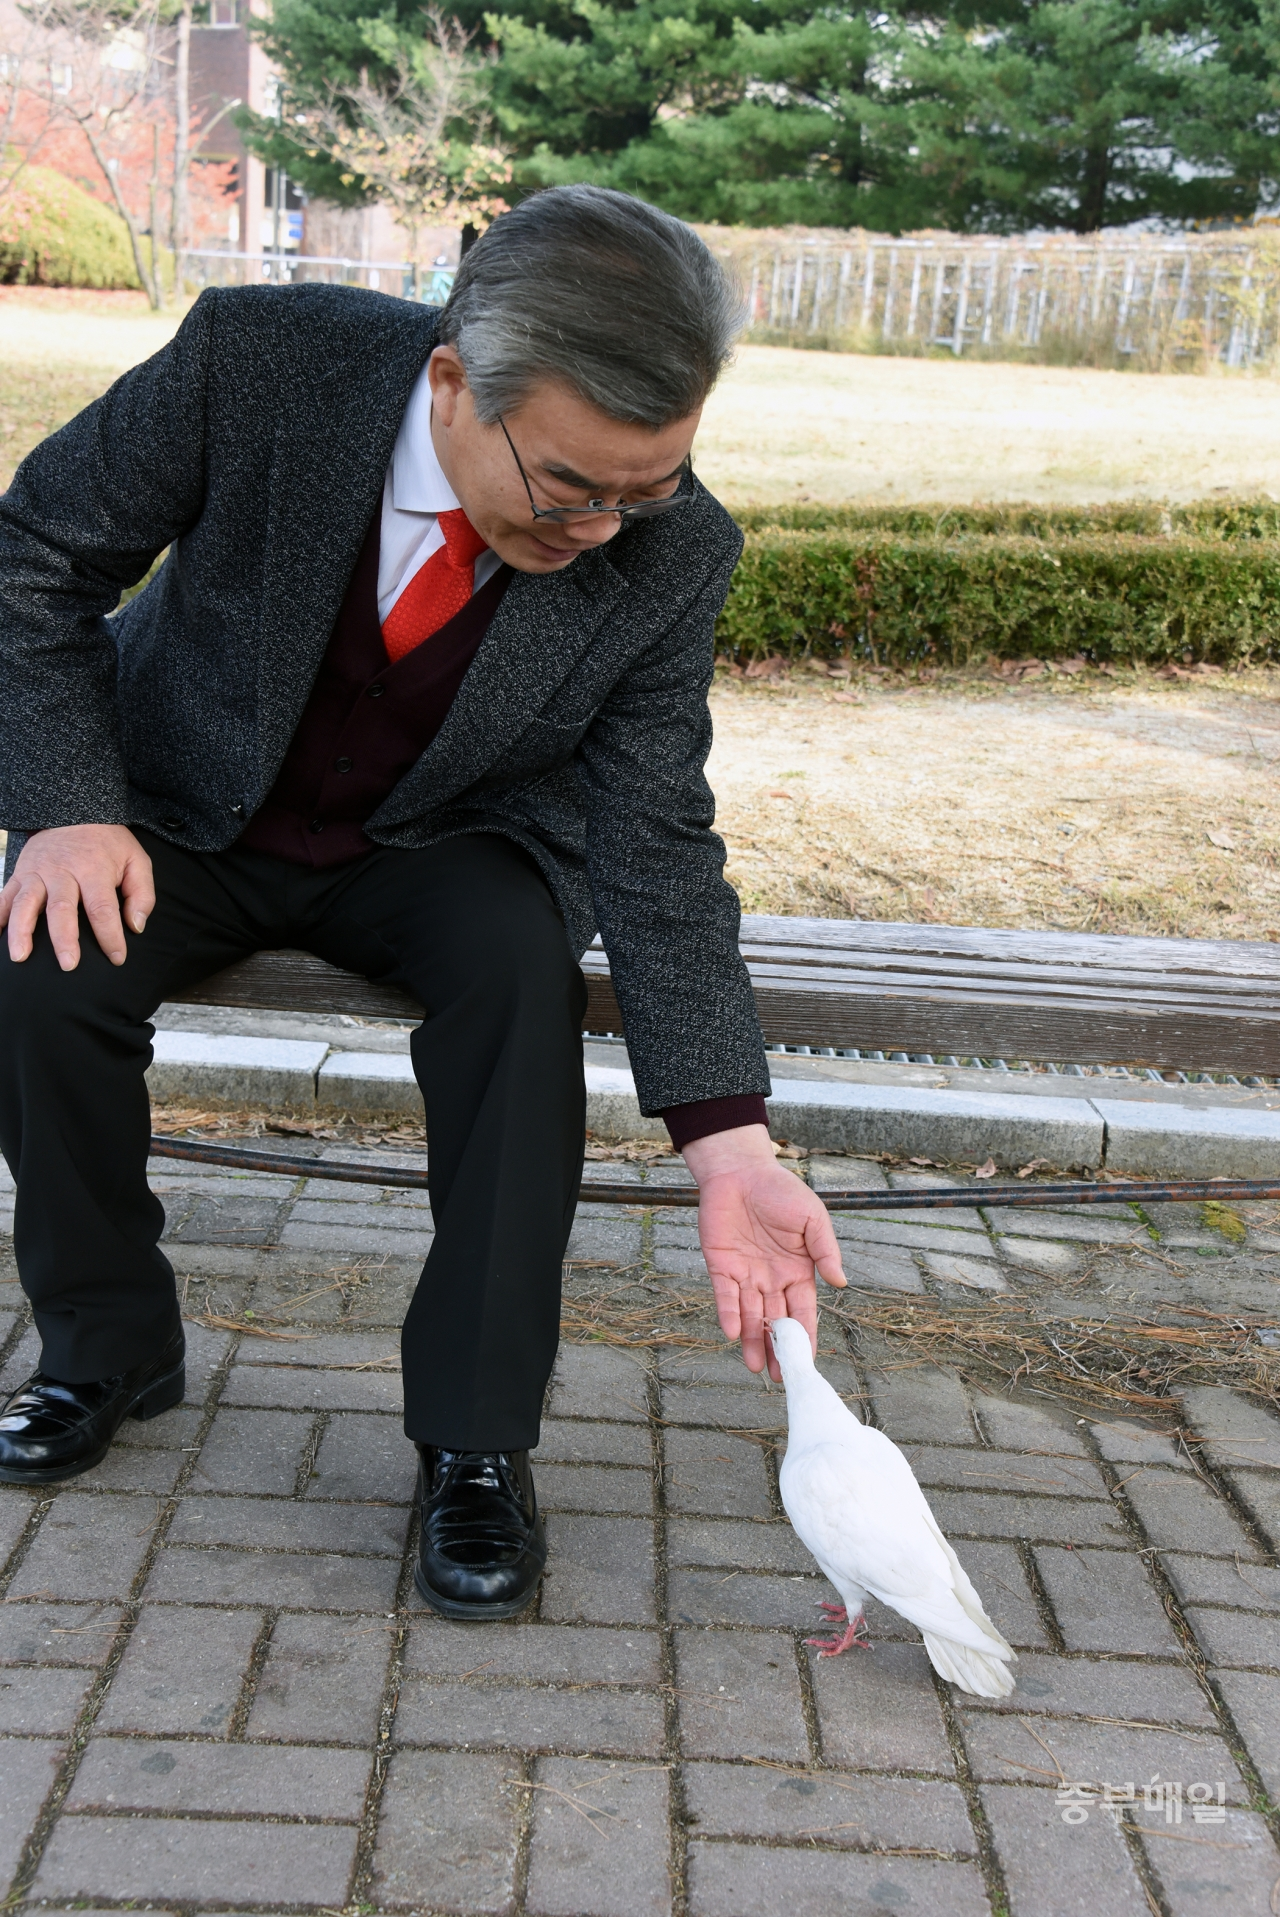 최현호 자유한국당 청주서원당협위원장이 인터뷰 도중 날아온 흰 비둘기를 반갑게 맞이하고 있다. / 김용수